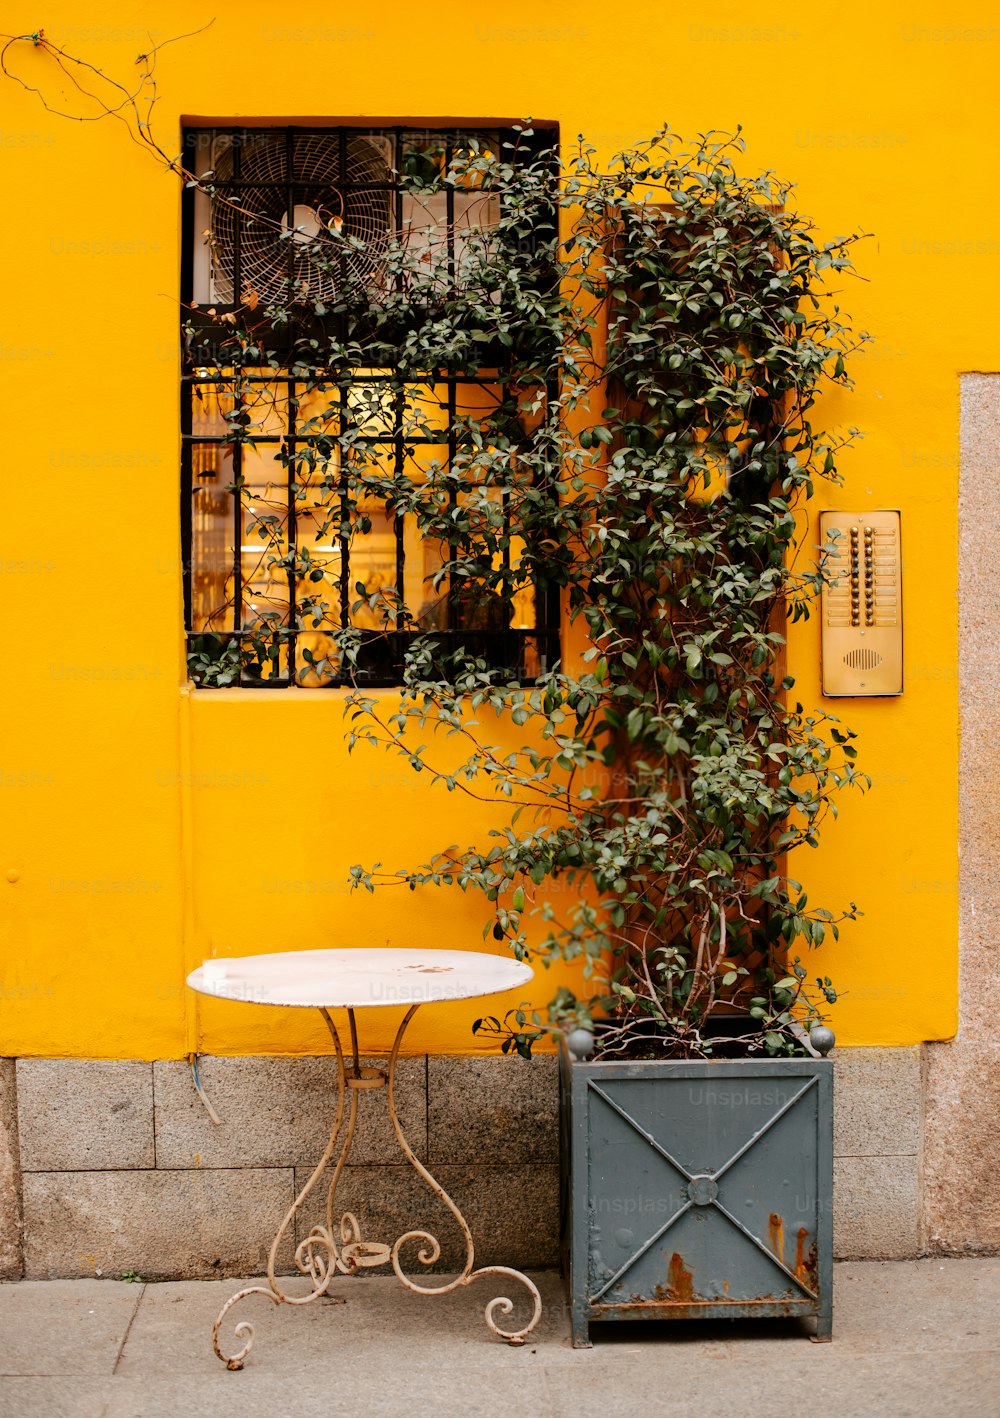 ��노란 건물 앞에 있는 작은 테이블과 식물